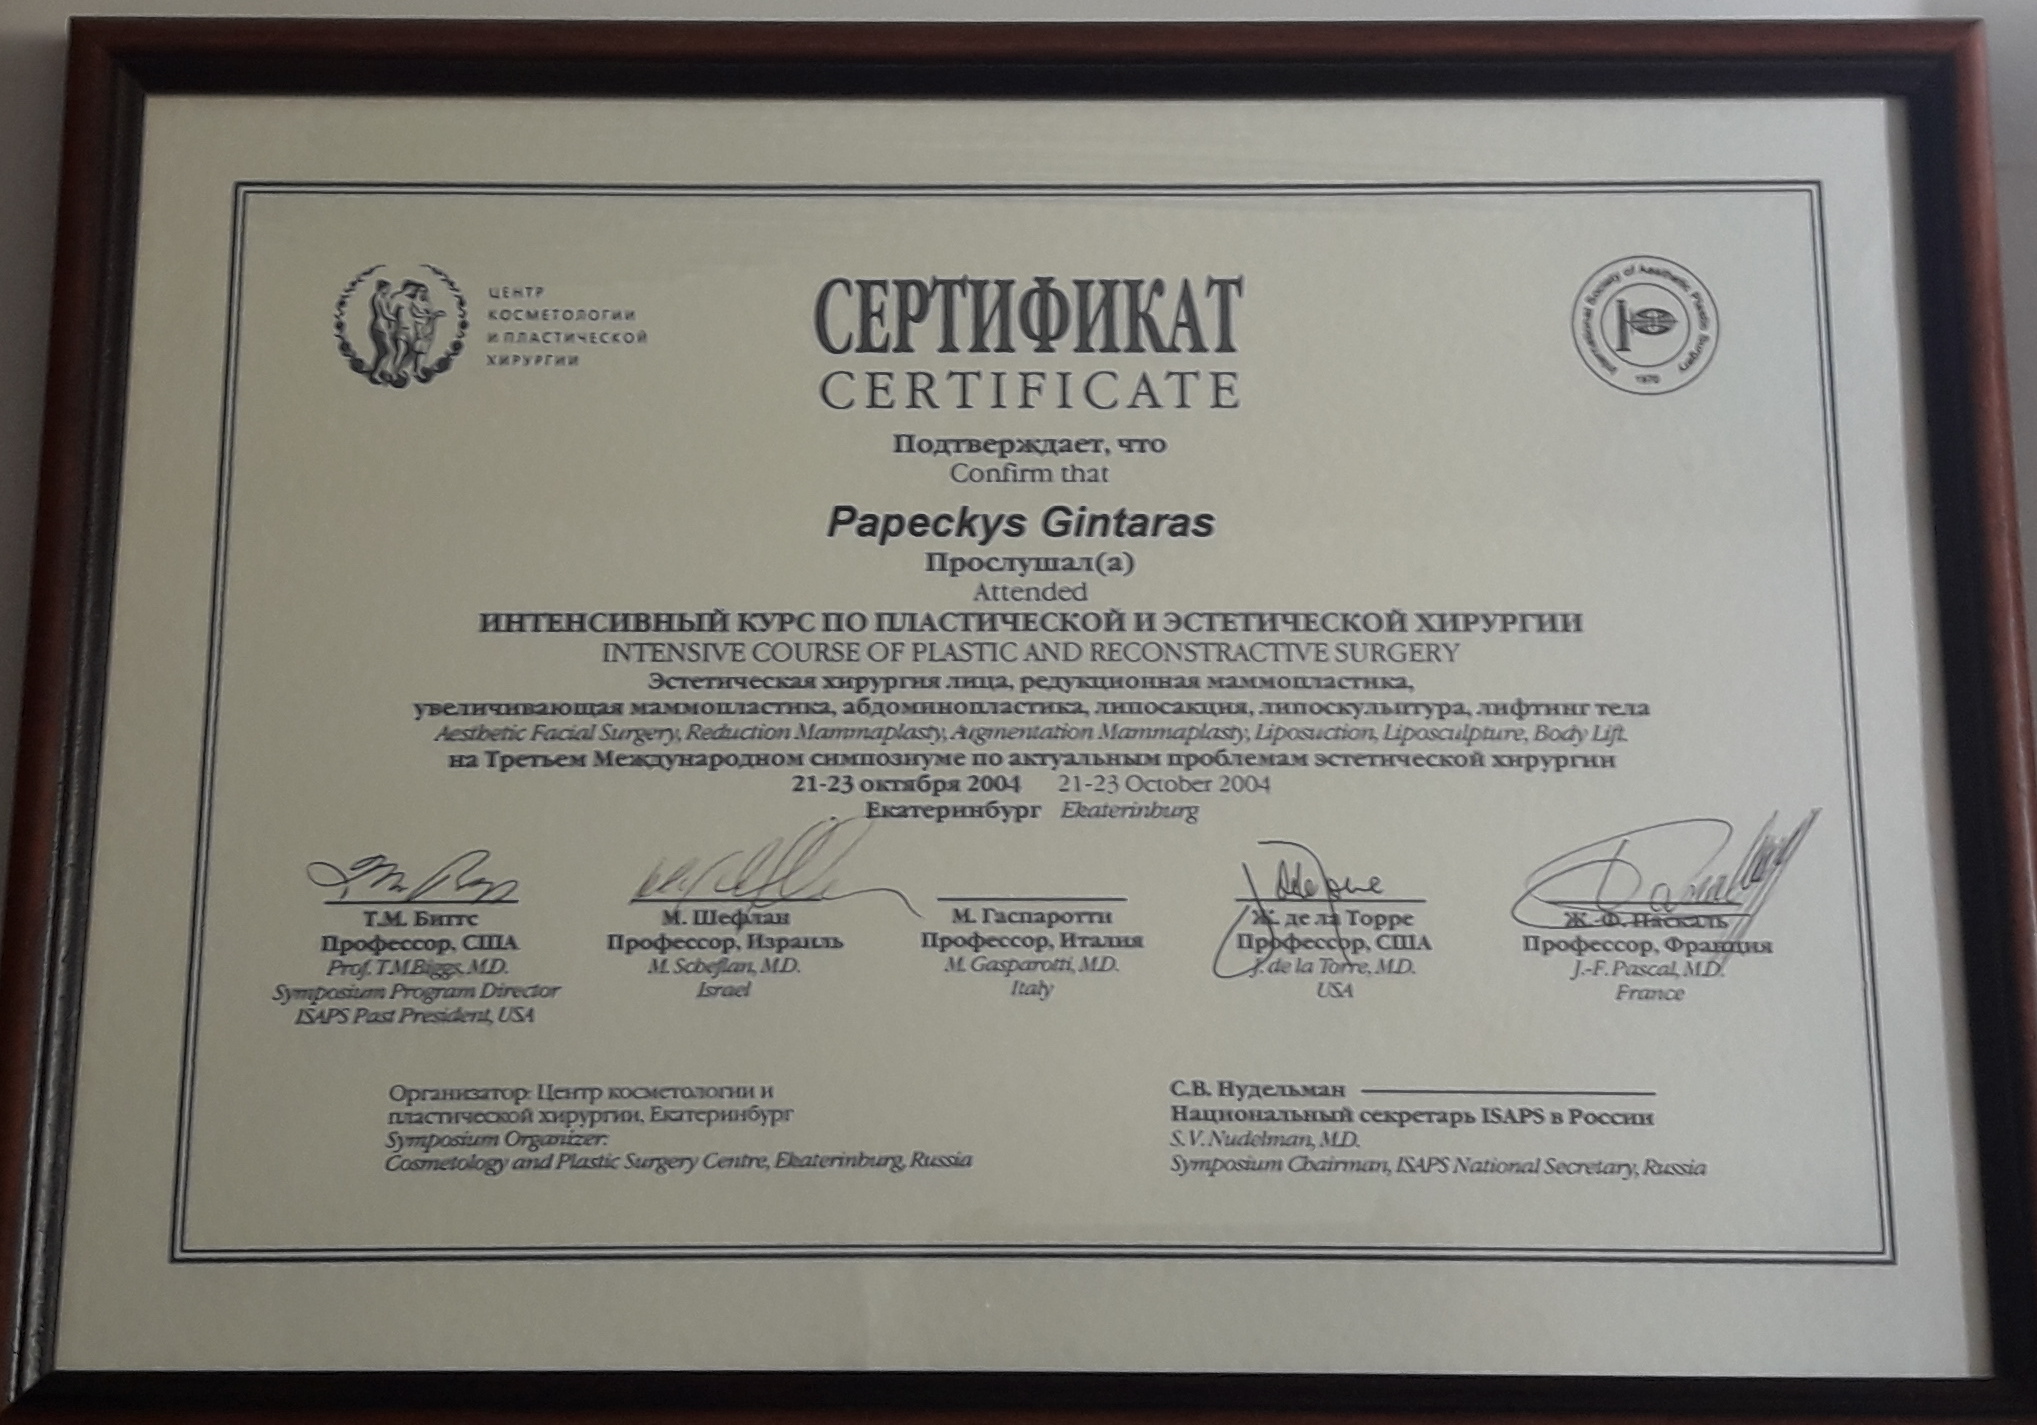 Gintaras Papeckys sertificate